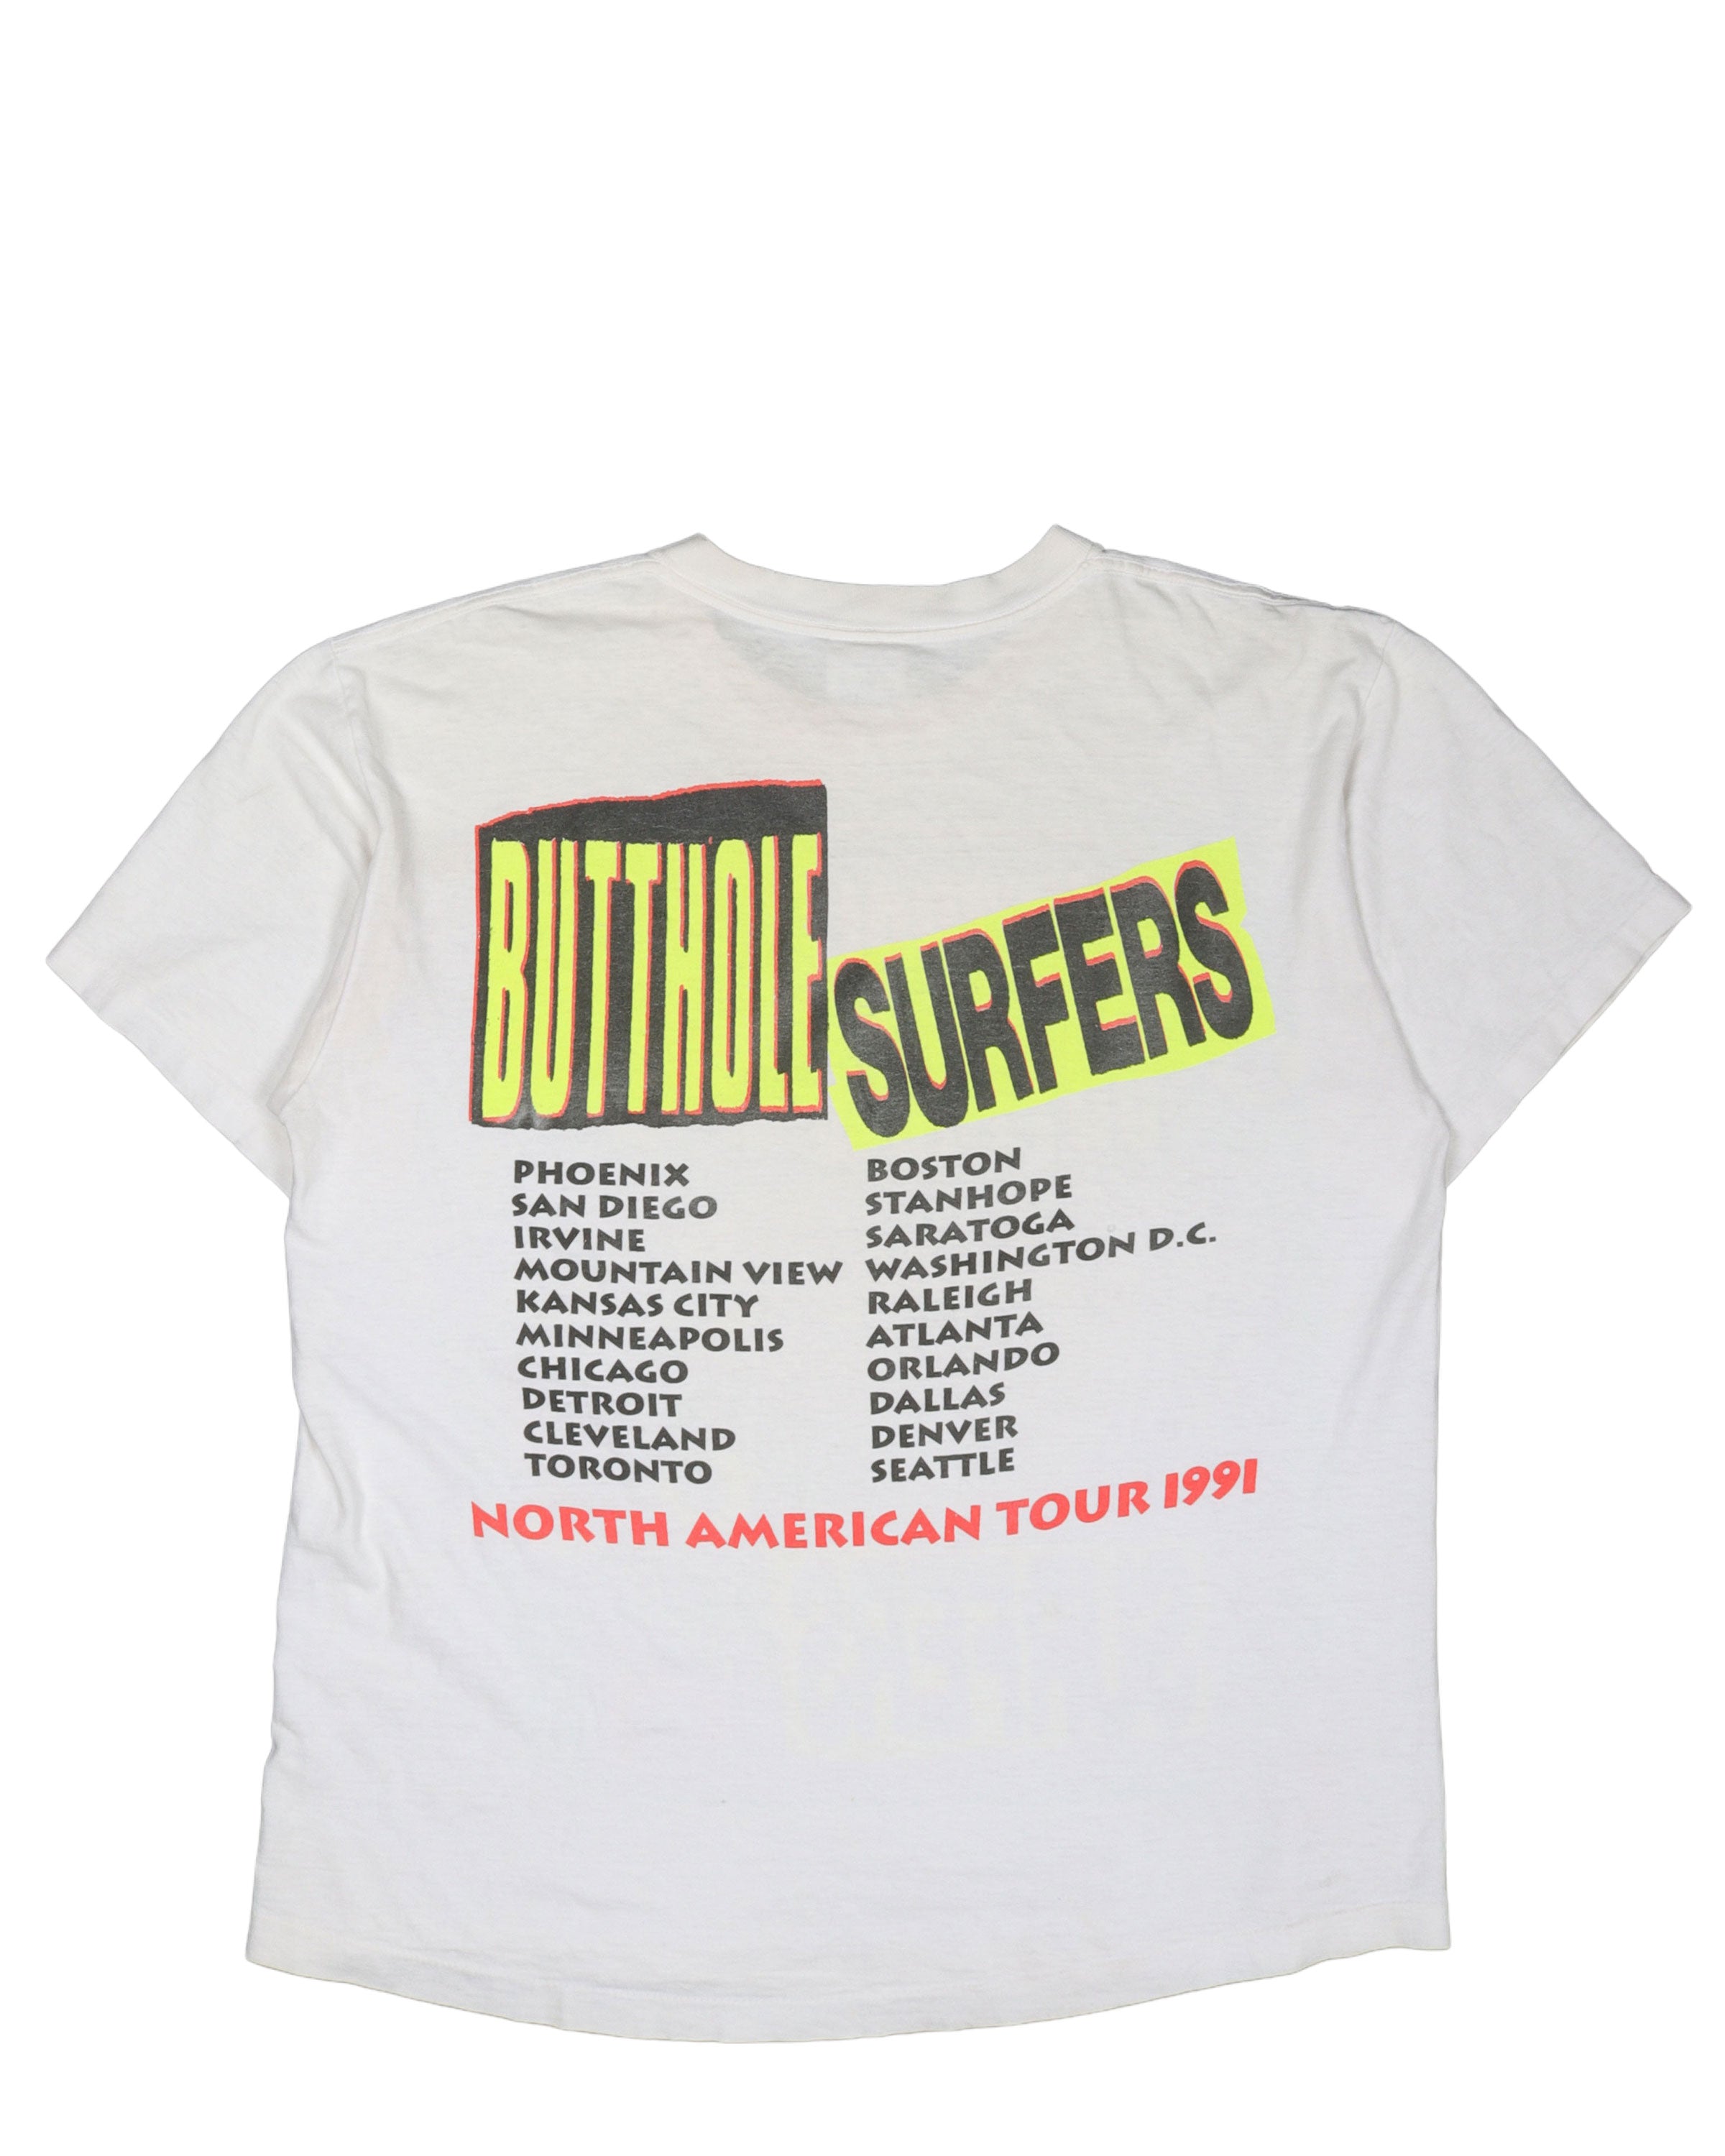 Butthole Surfers 1991 Tour T-Shirt